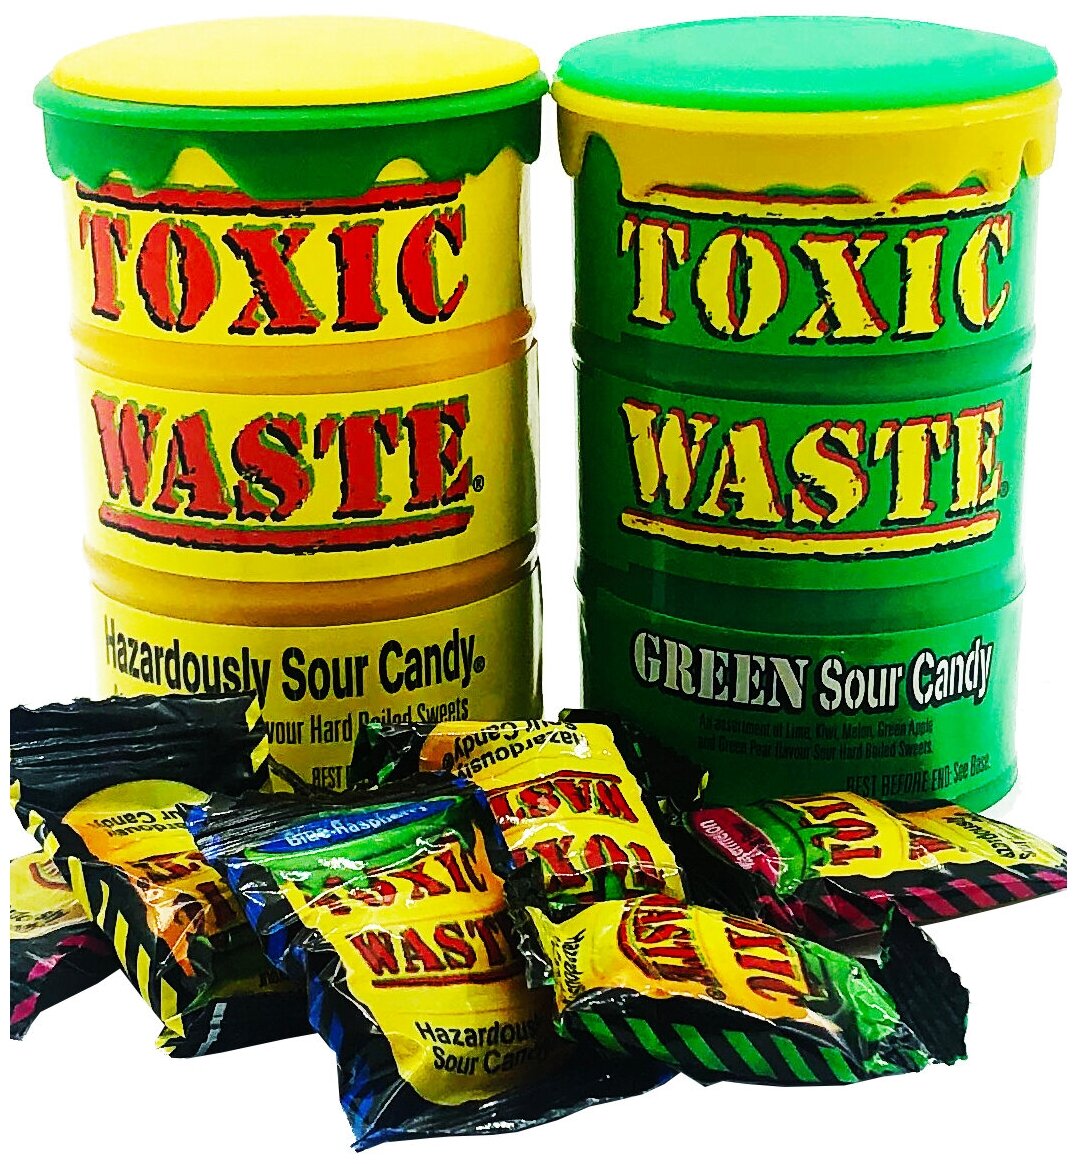 Toxic Waste набор из самых кислых конфет два цвета, желтый и зеленый